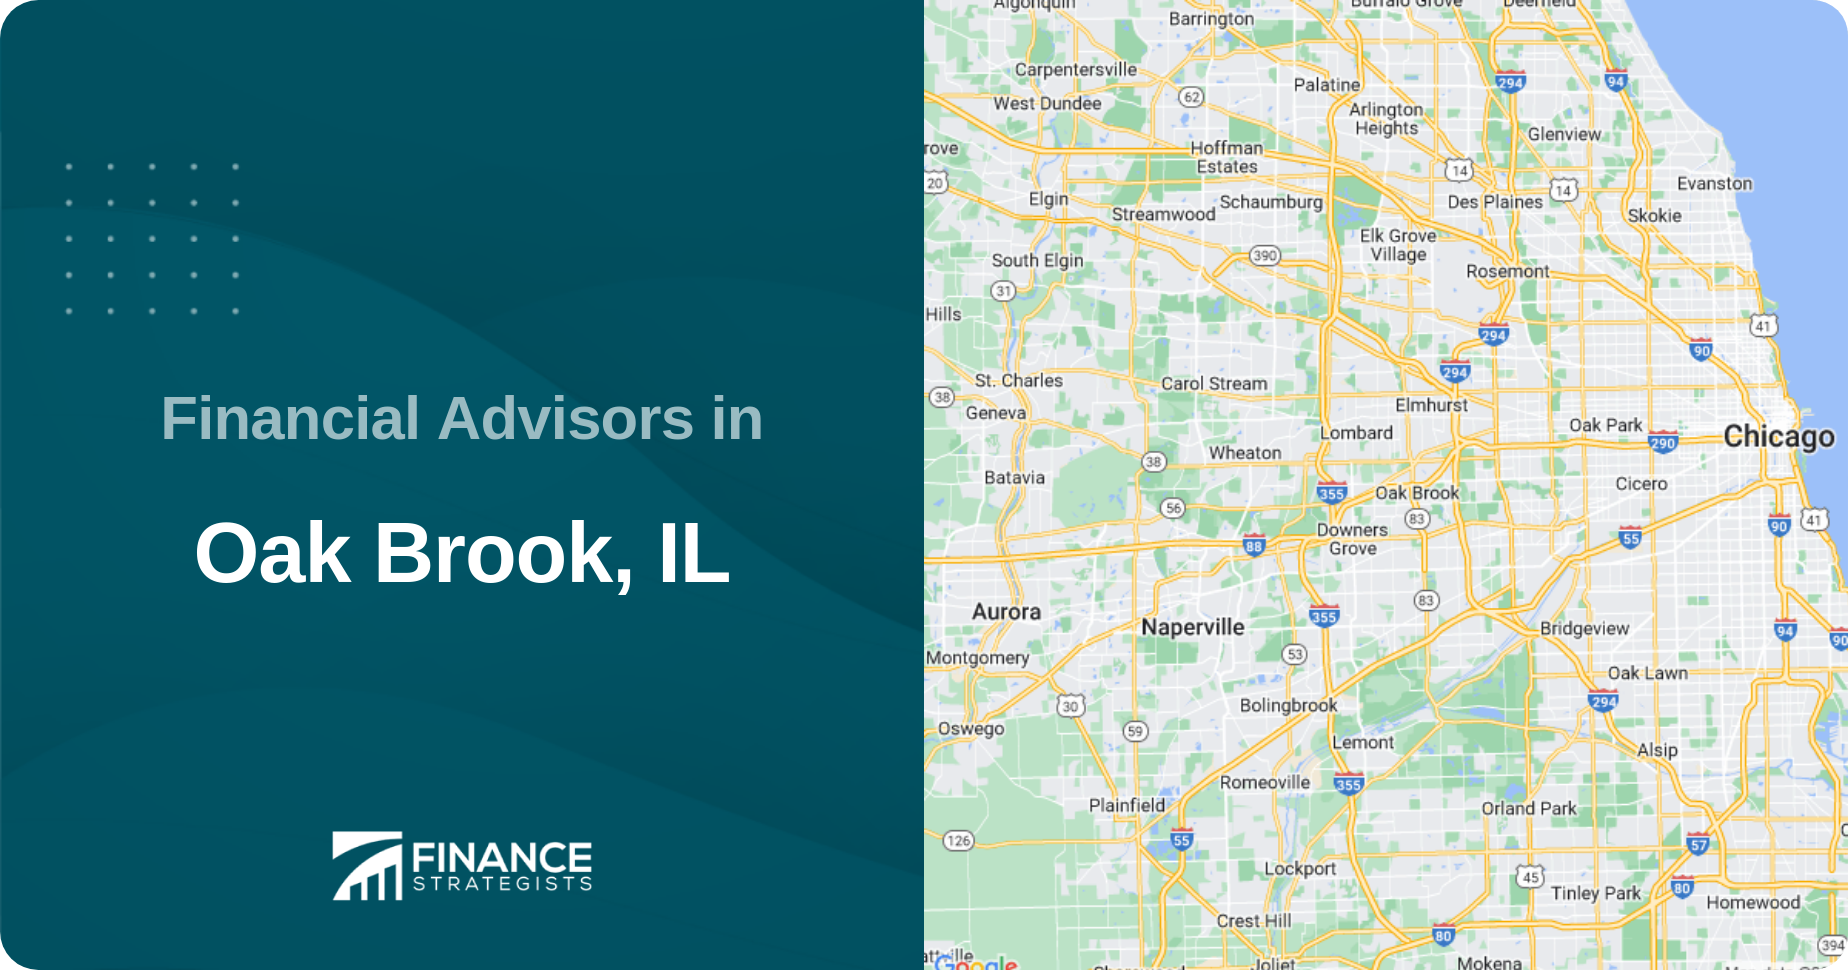 Financial Advisors in Oak Brook, IL